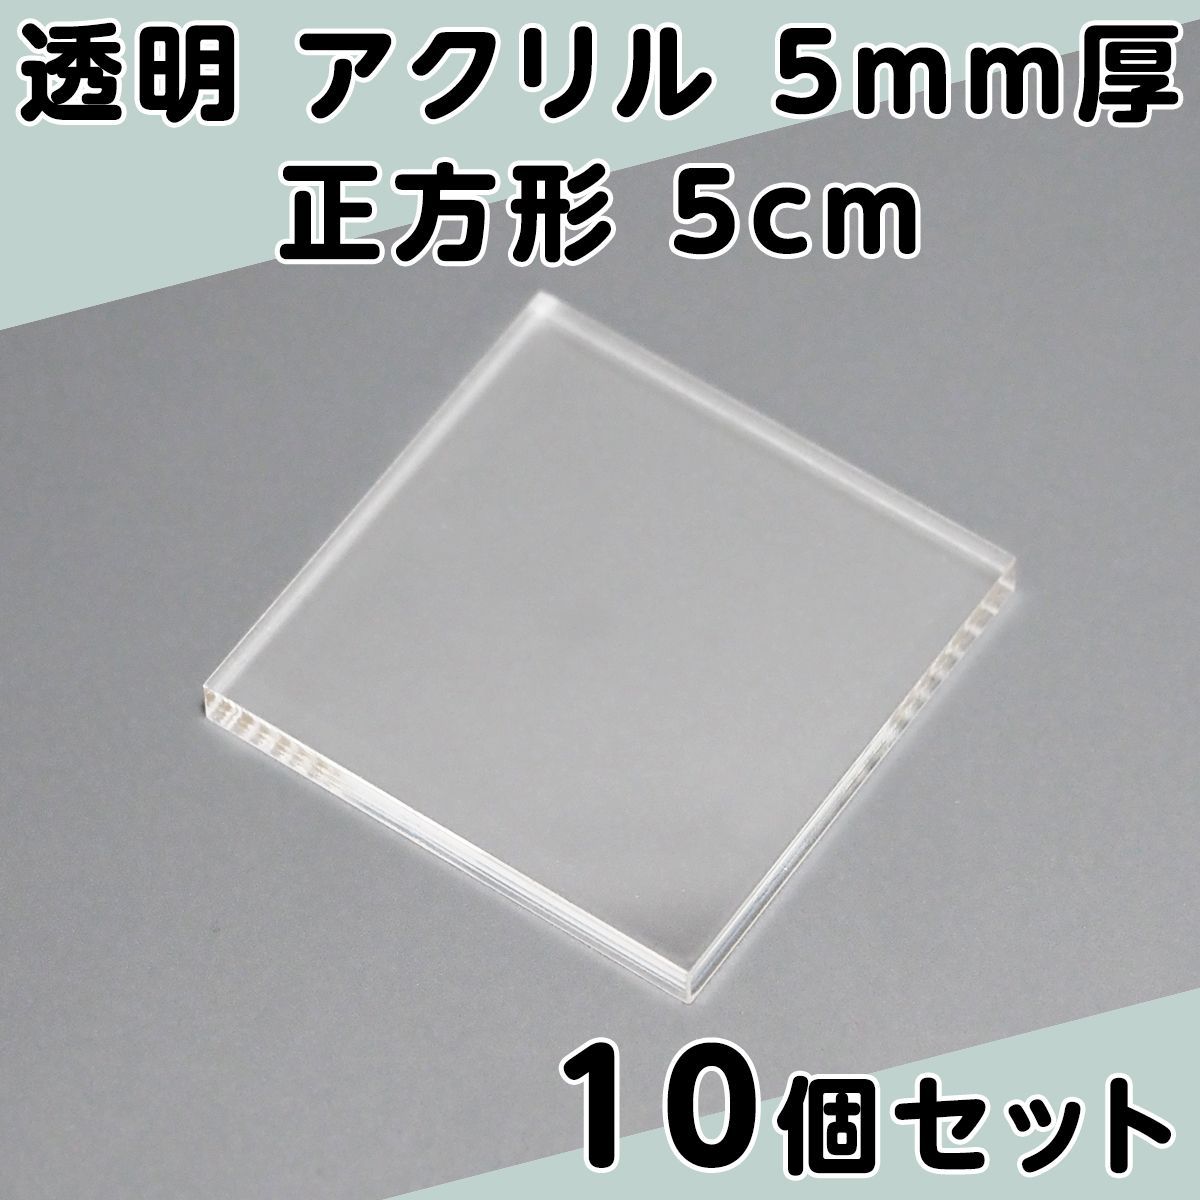 透明 アクリル 5mm厚 正方形 5cm 10個セット - メルカリ